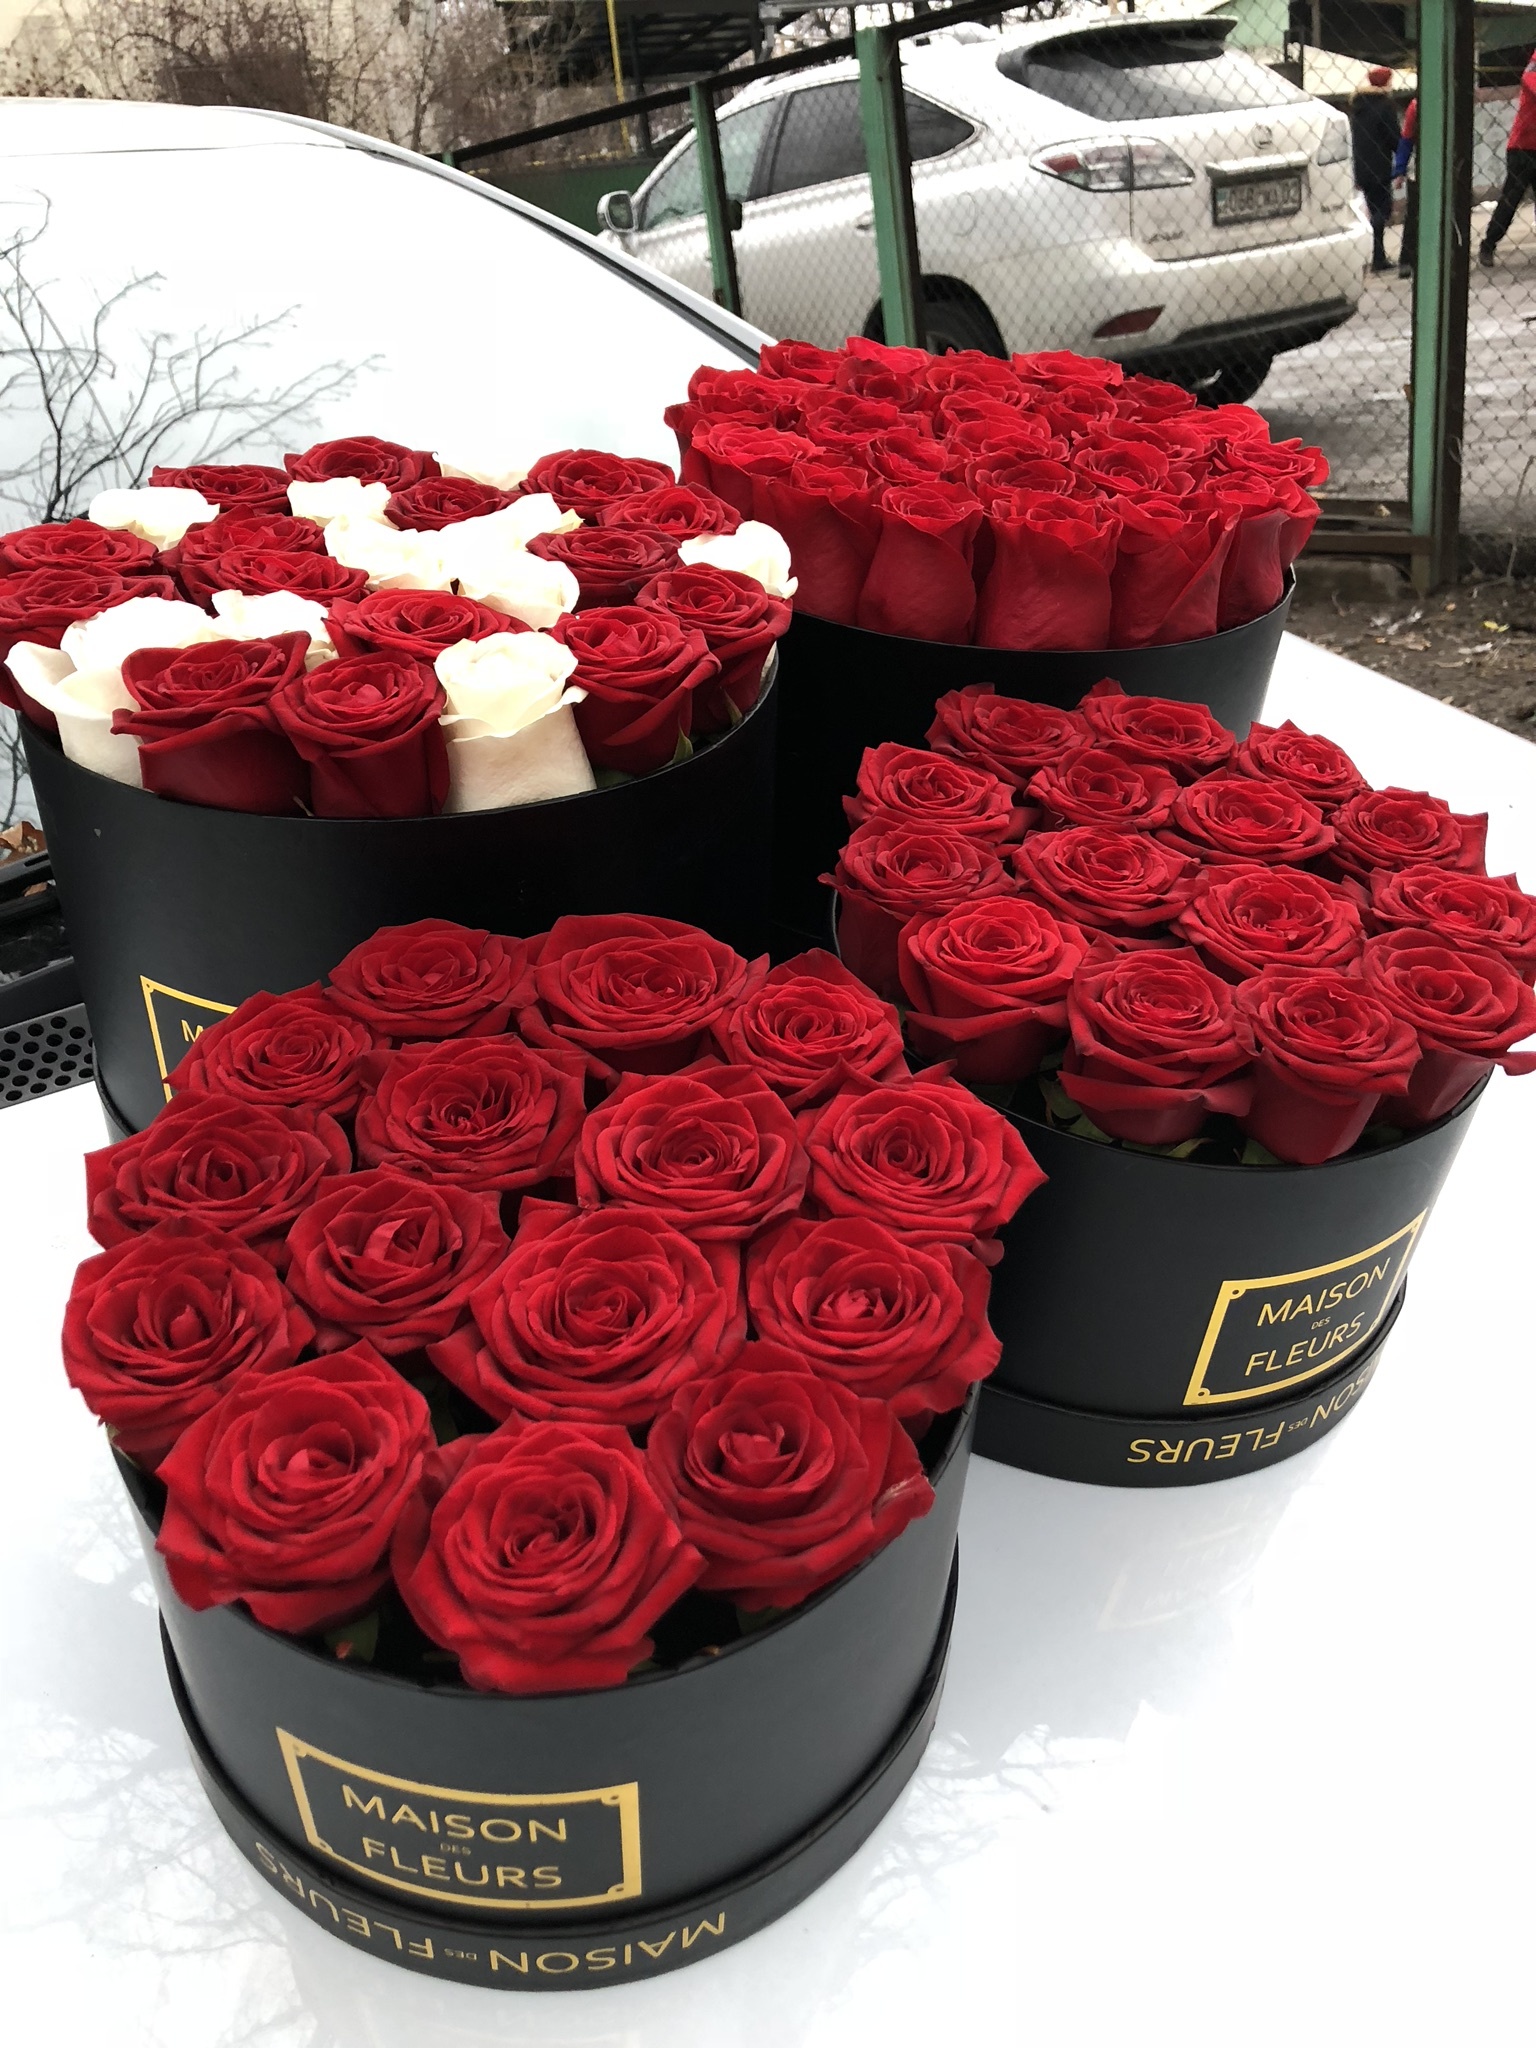 Купить розы в москве с доставкой дешево. Цветы в коробочке. Розы в коробке. Красные розы в коробке. Коробка для цветов.